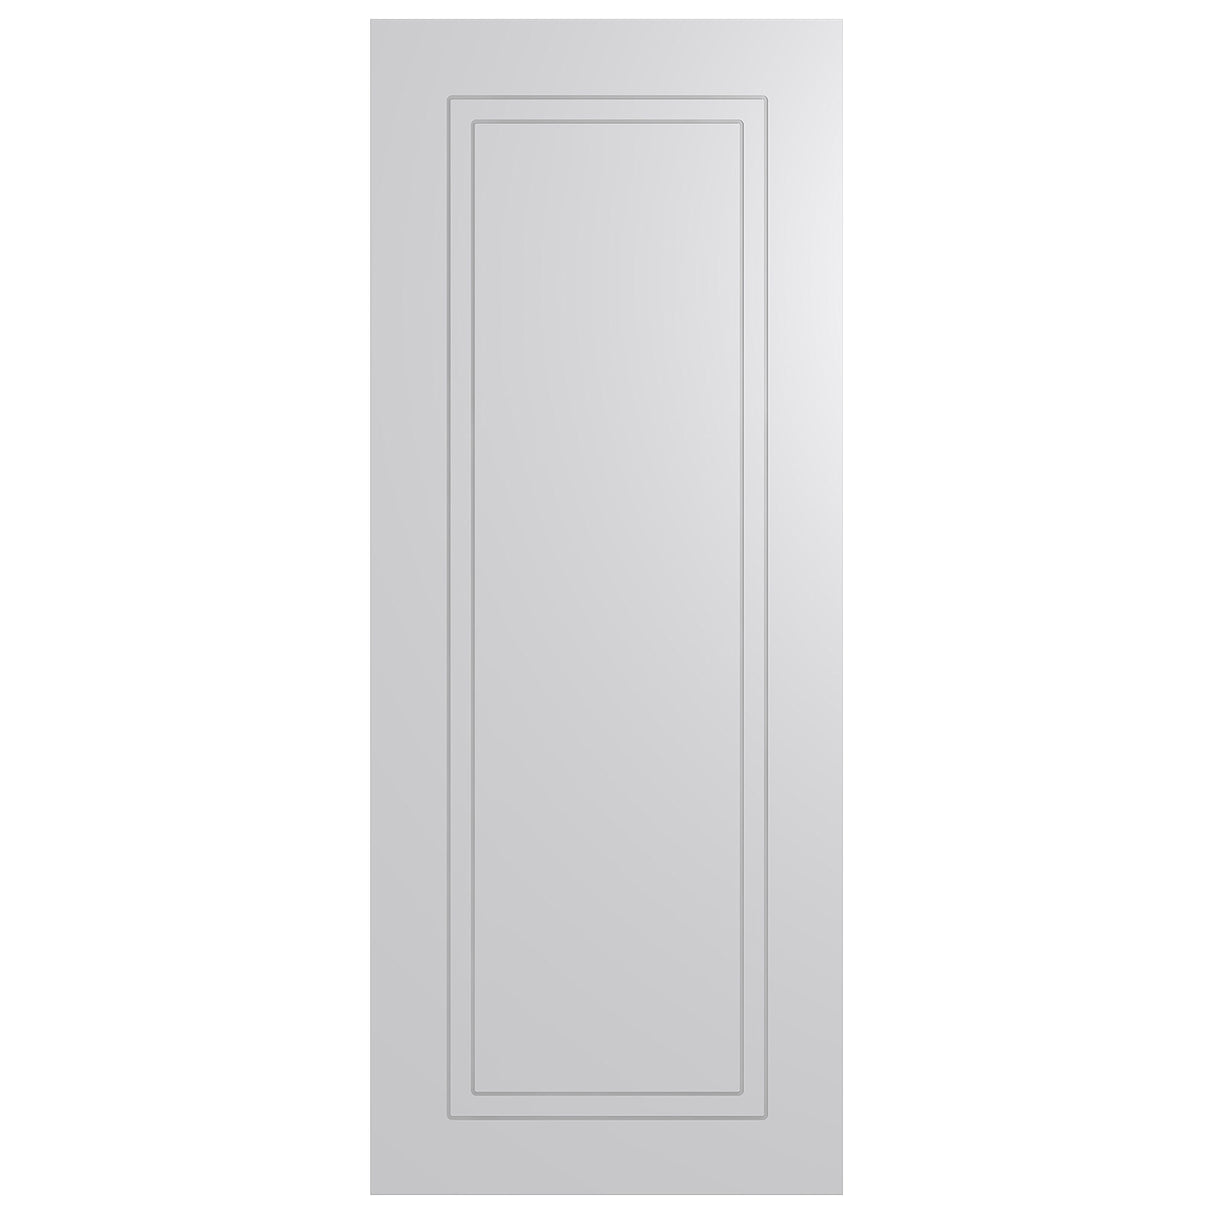 Accent HA5 Internal Door 2040 range Installed package